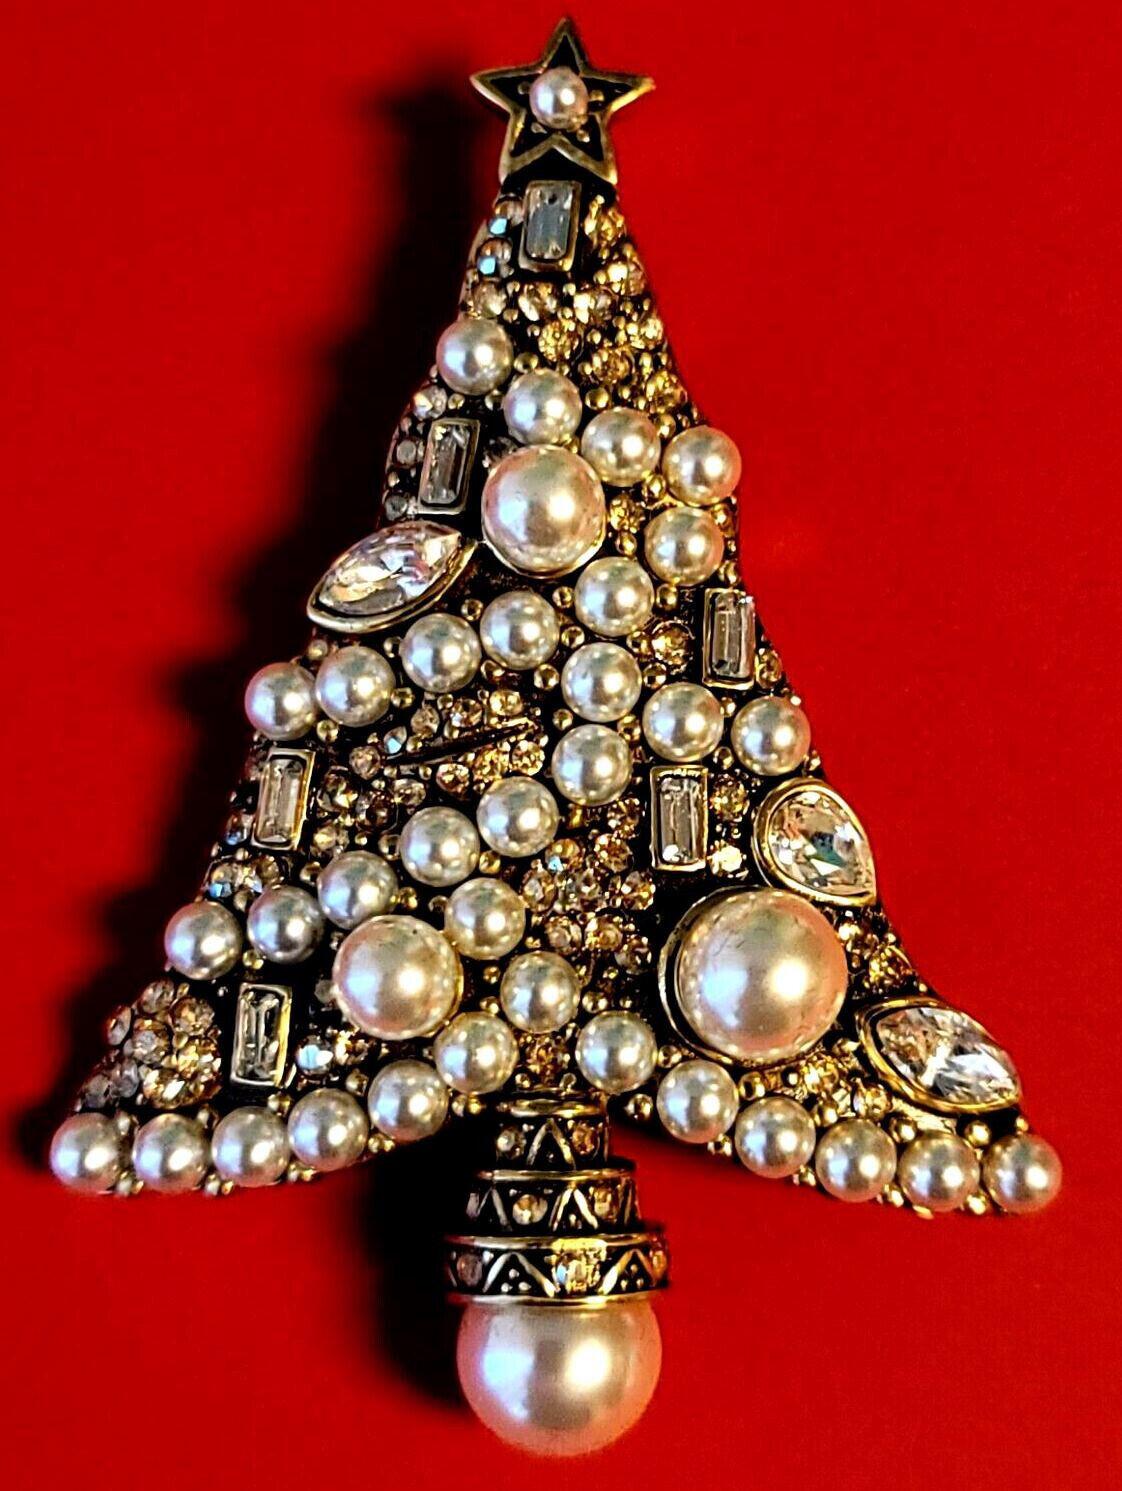 Einfach schön! Heidi Daus Designer signiert Swarovski Kristall und Perle Weihnachtsbaum Urlaub Brosche Pin. Handbesetzt mit funkelndem Swarovski Kristall und simulierten Perlen. In goldfarbener Fassung. Feiern Sie die Weihnachtszeit und den Winter